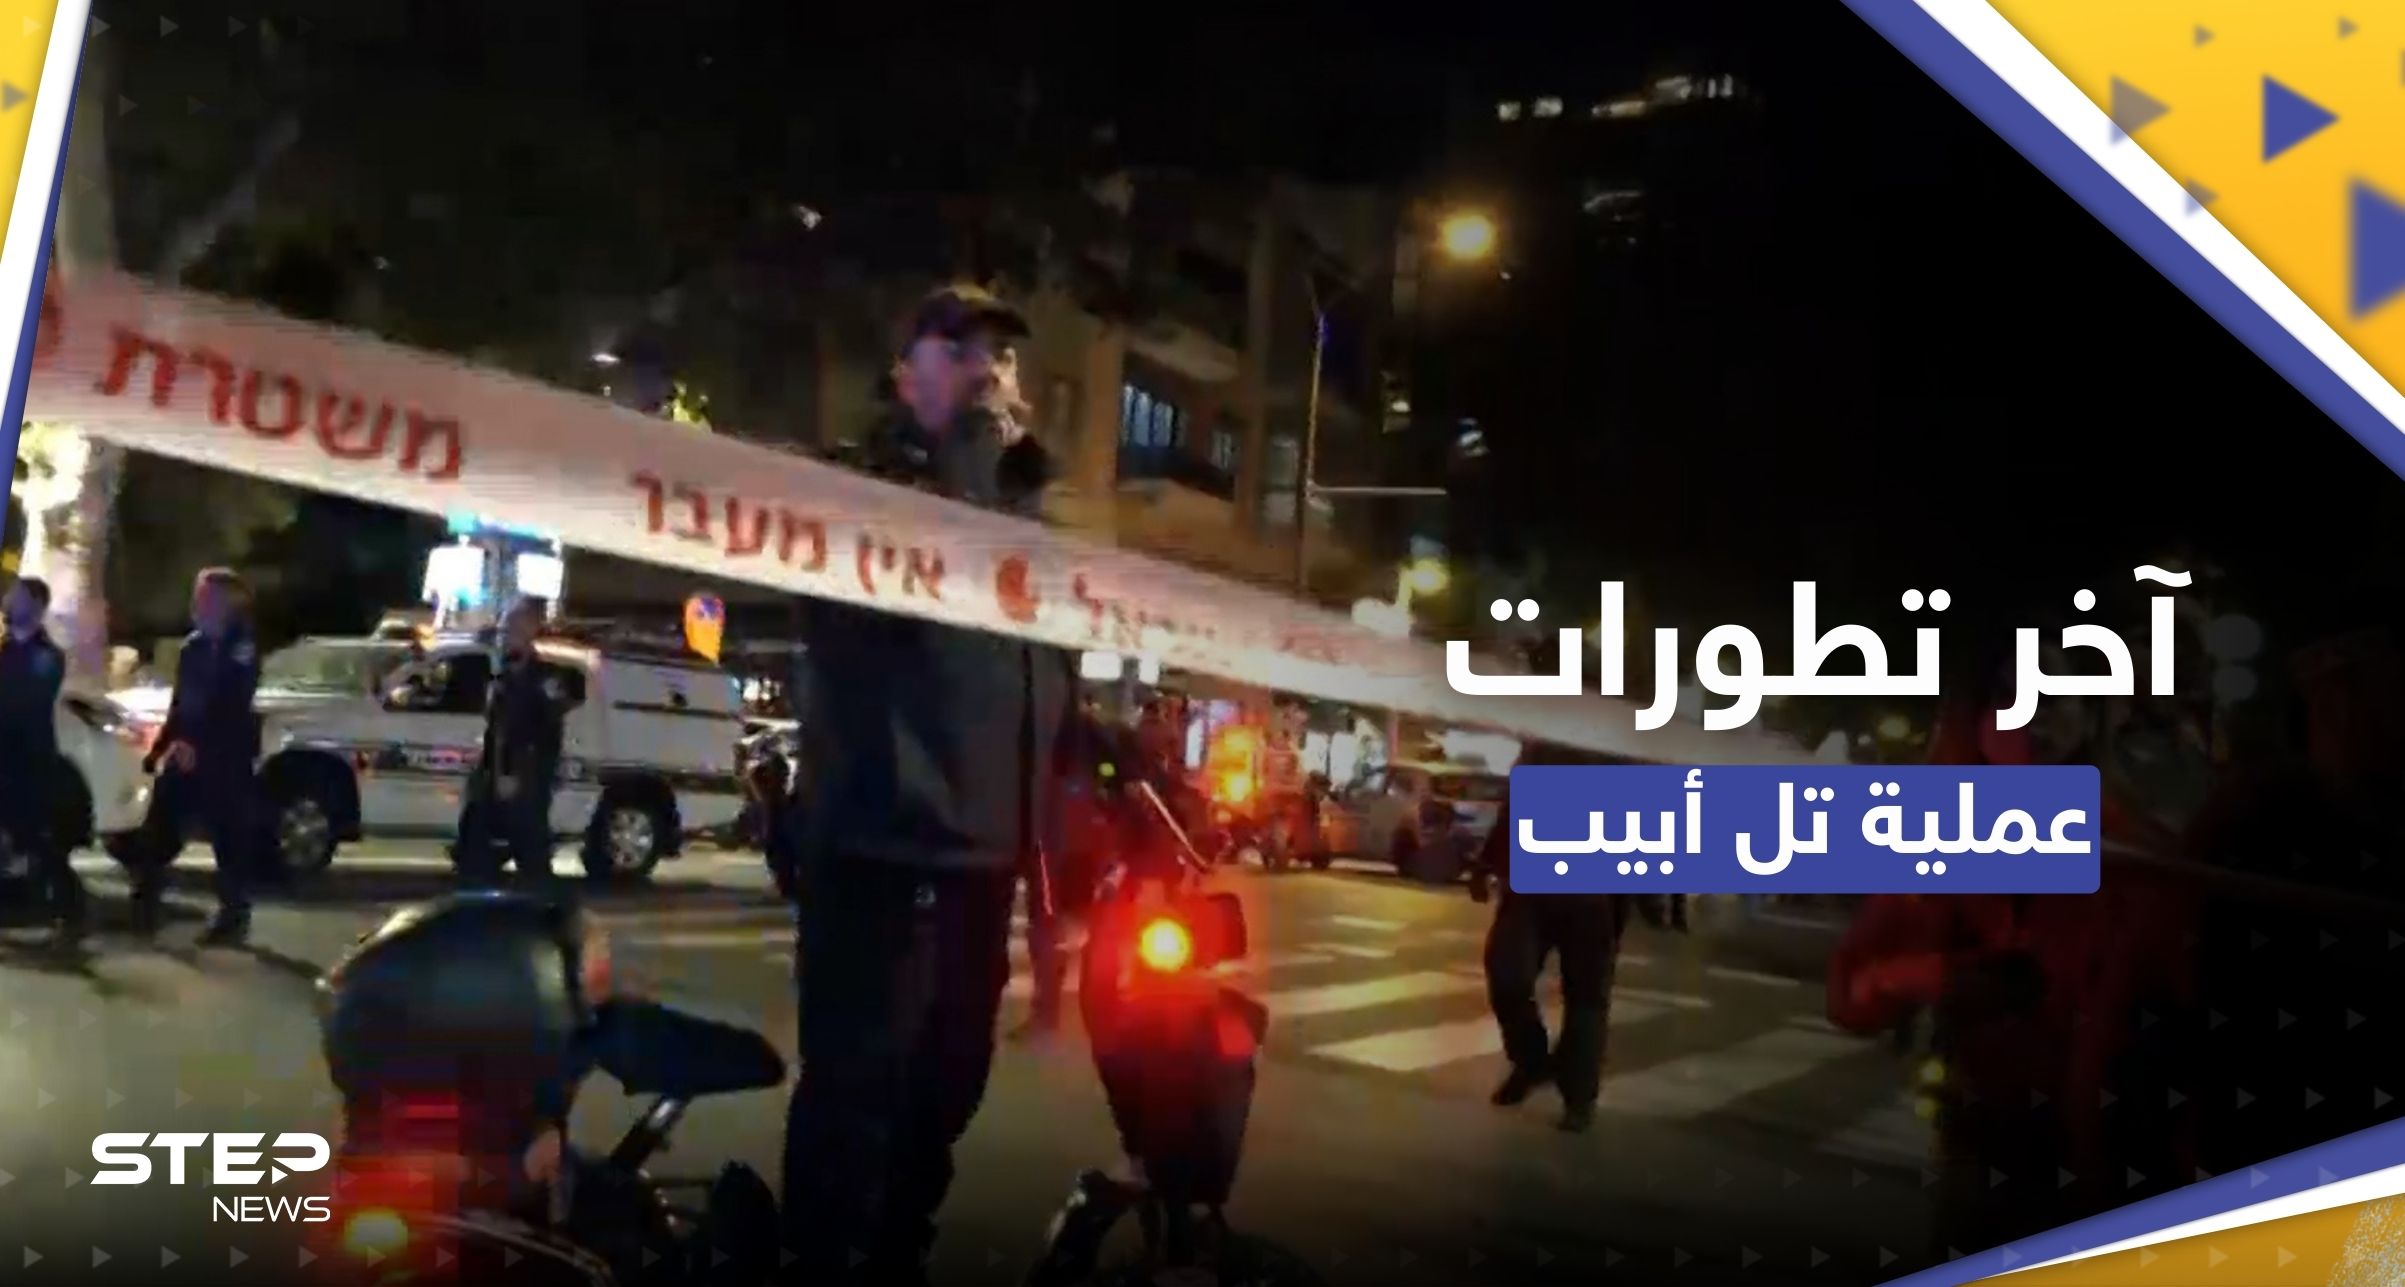 تطورات "عملية تل أبيب".. مقتل سائح أجنبي ونتنياهو يستدعي قوات الاحتياط (فيديو)